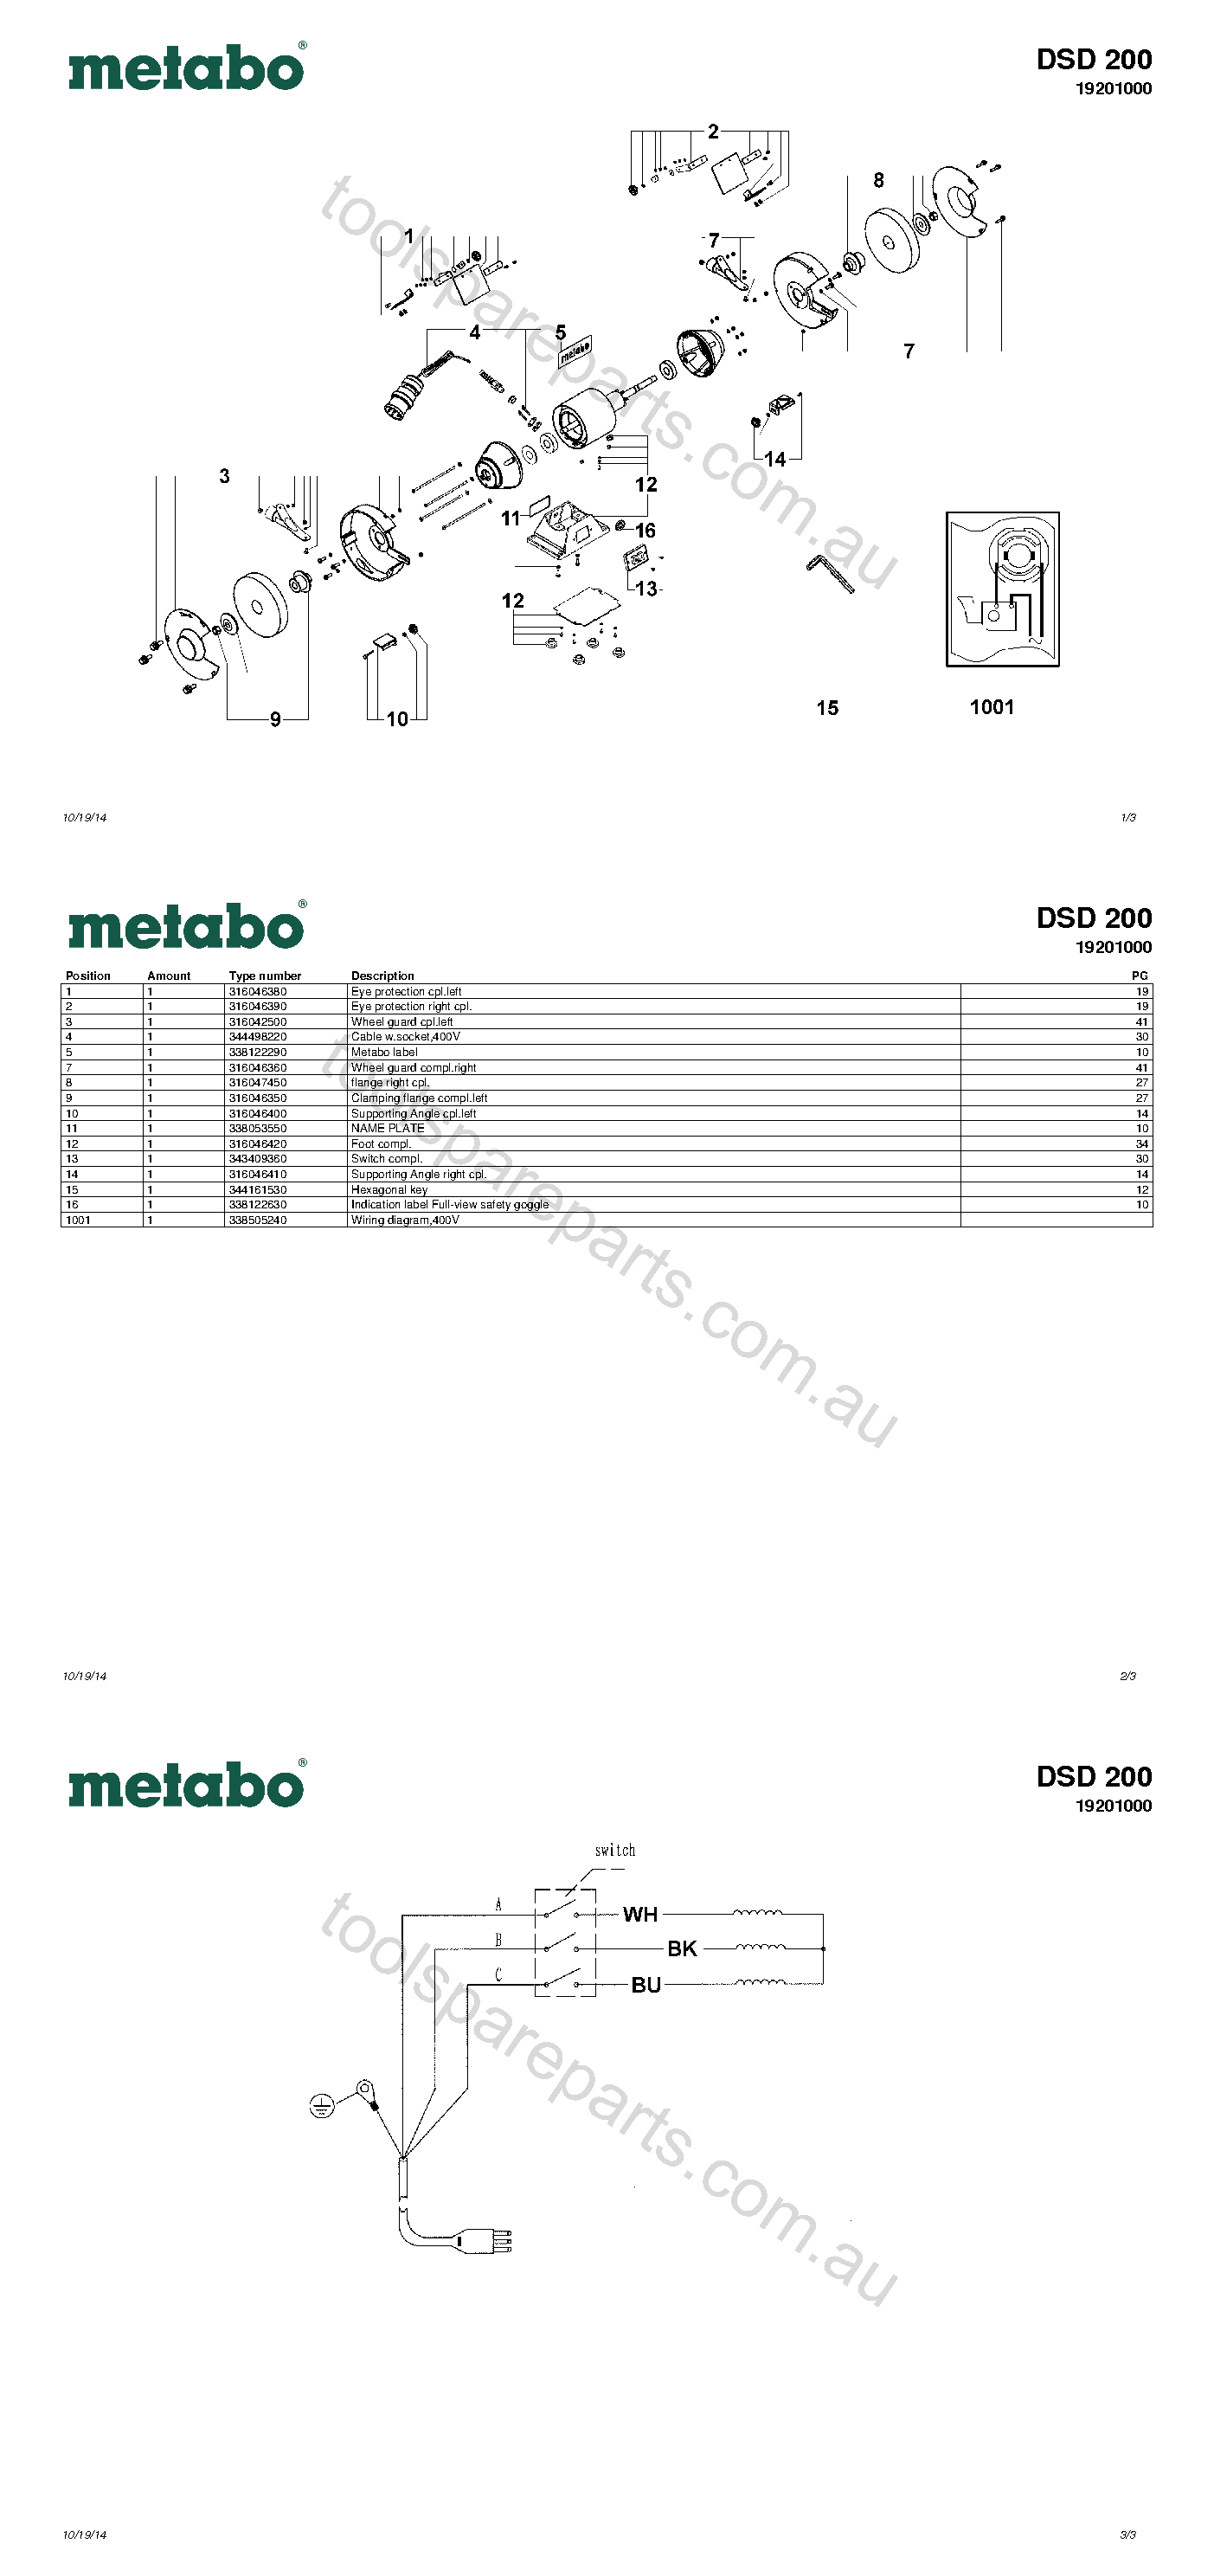 Metabo DSD 200 19201000  Diagram 1